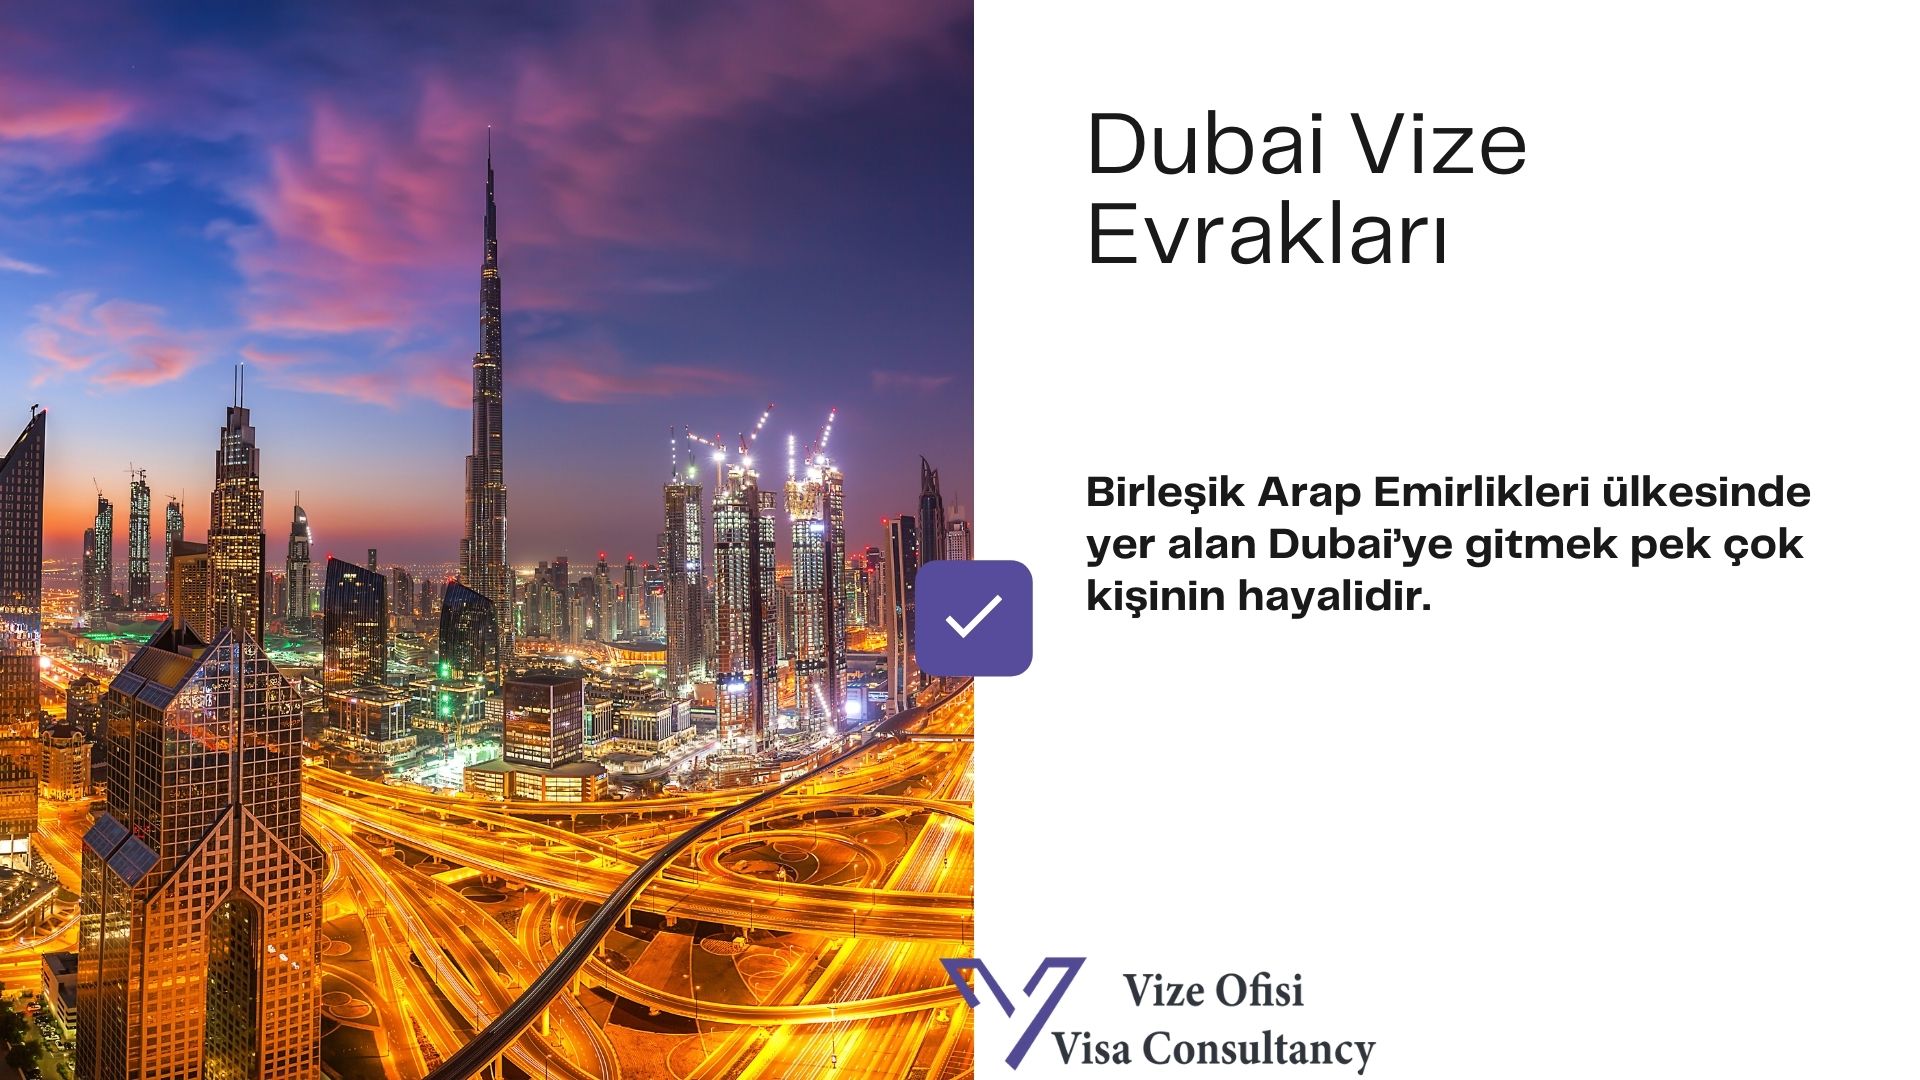 Dubai Vize Evrakları 2021 Tam Liste